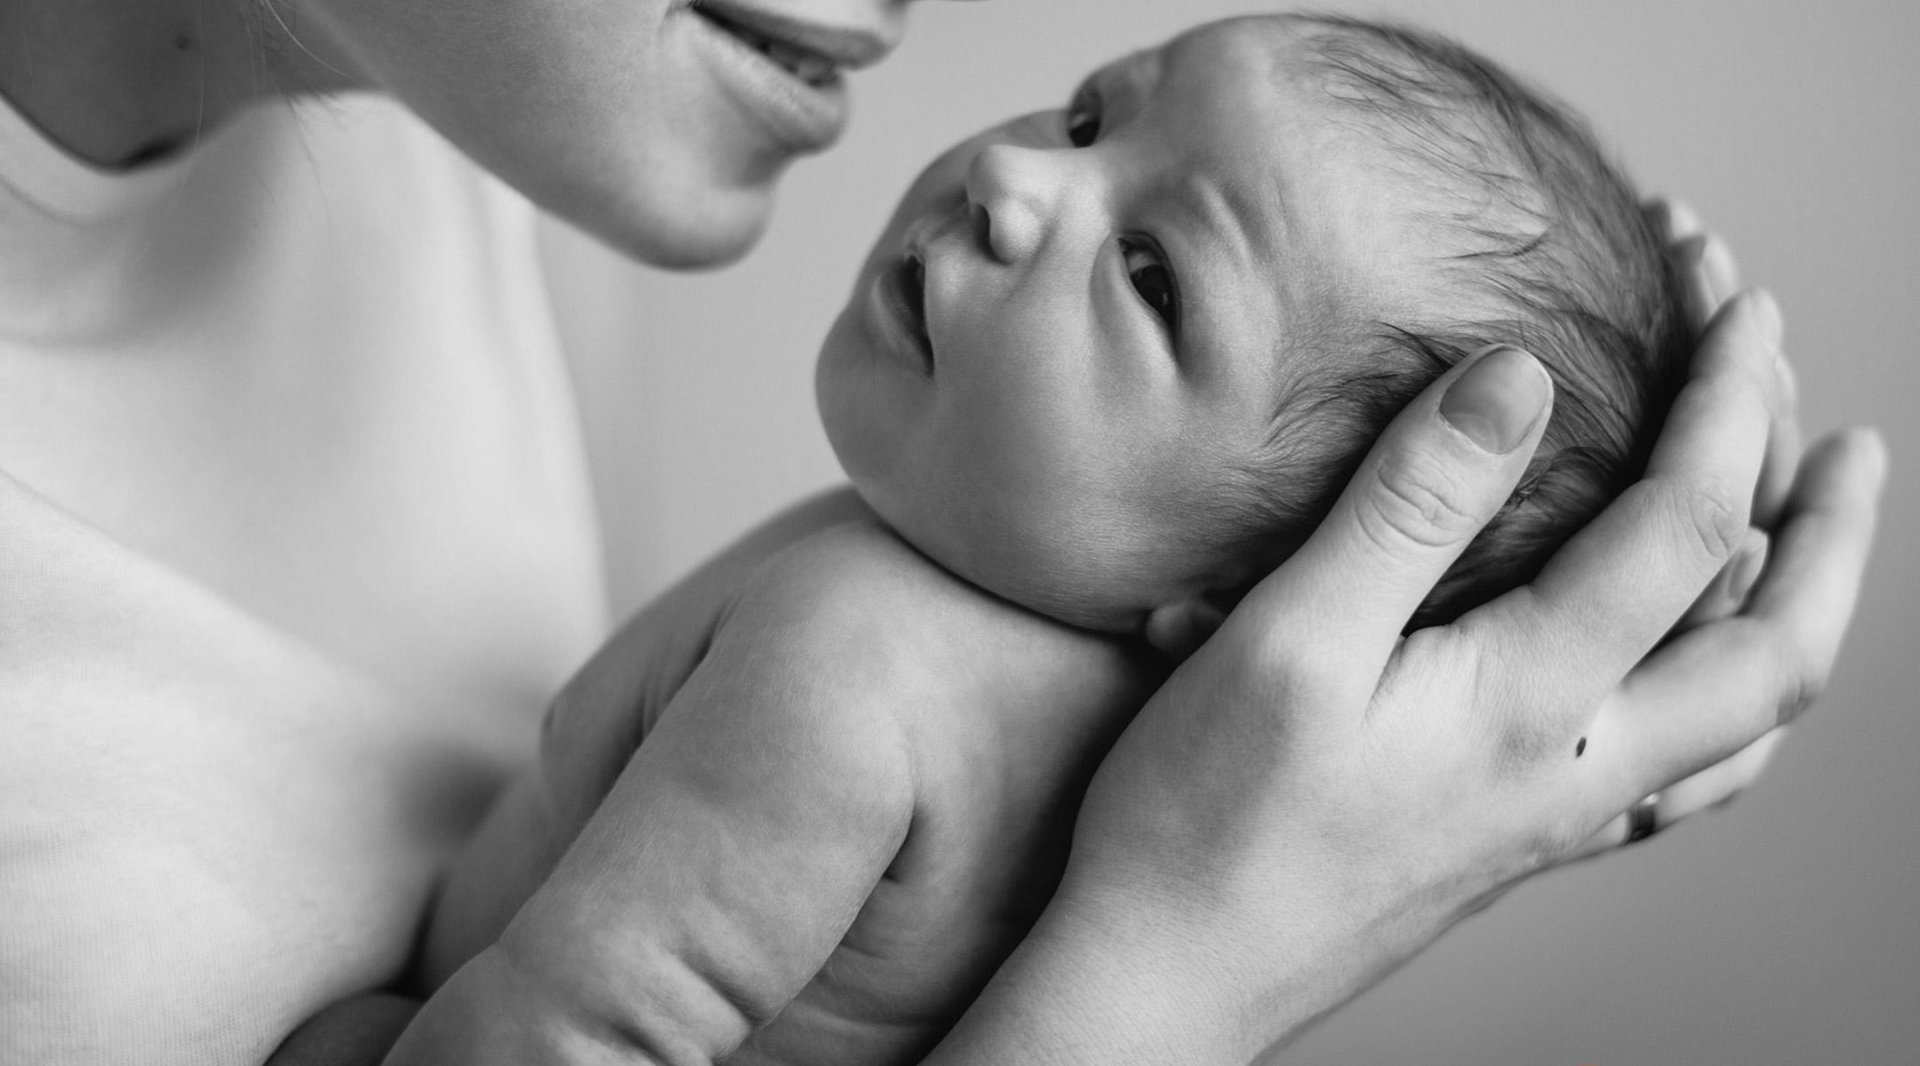 Bé sơ sinh có hệ miễn dịch còn non yếu, vì thế bạn cần vô cùng cẩn trọng trong từng tiếp xúc với bé